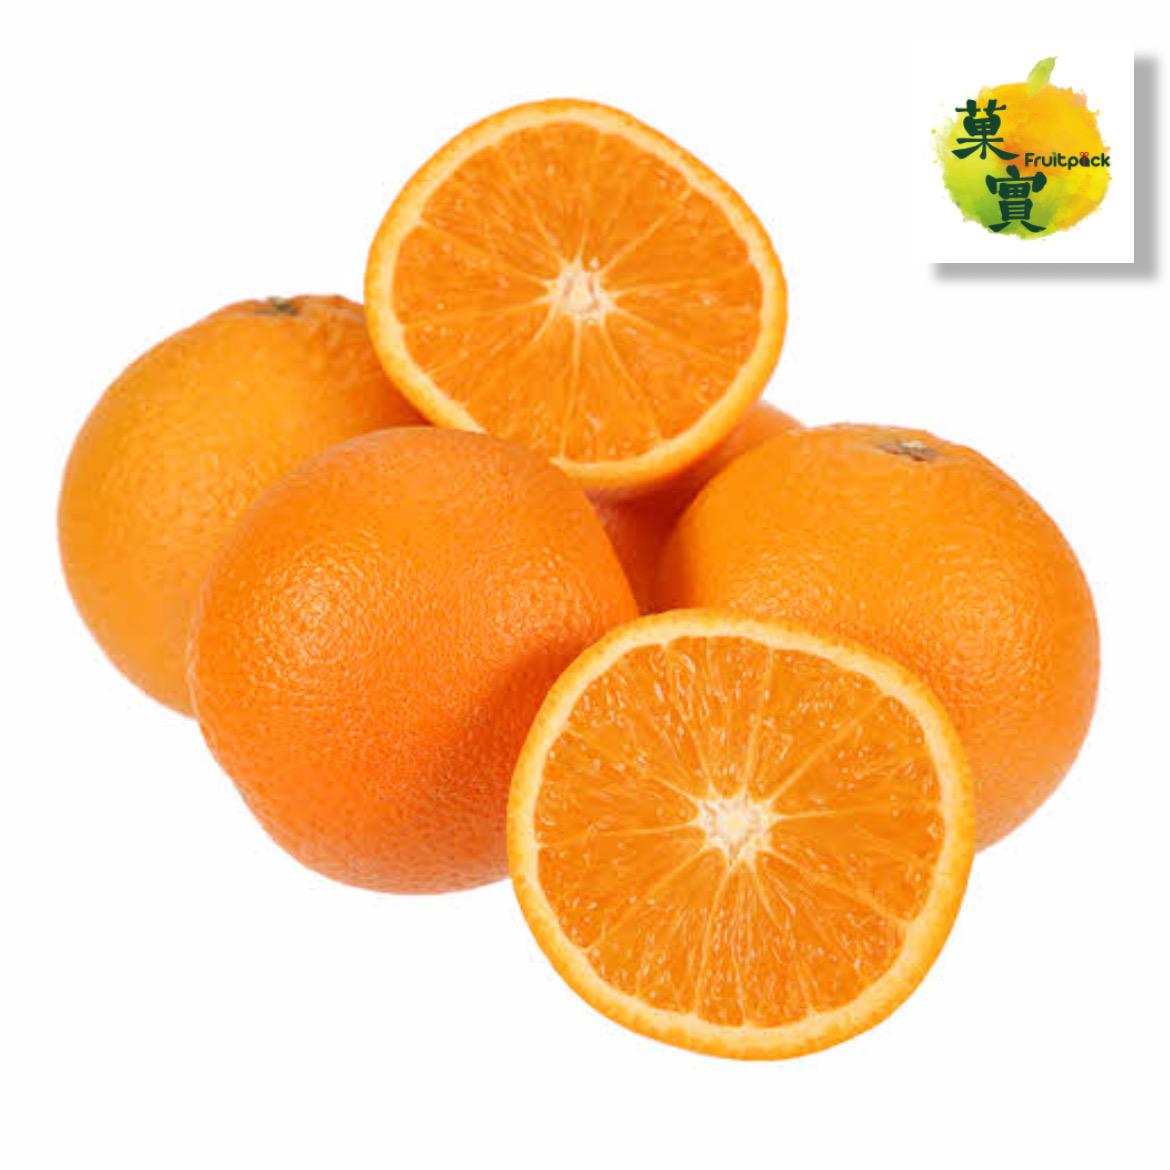 時令鮮橙 (5個)